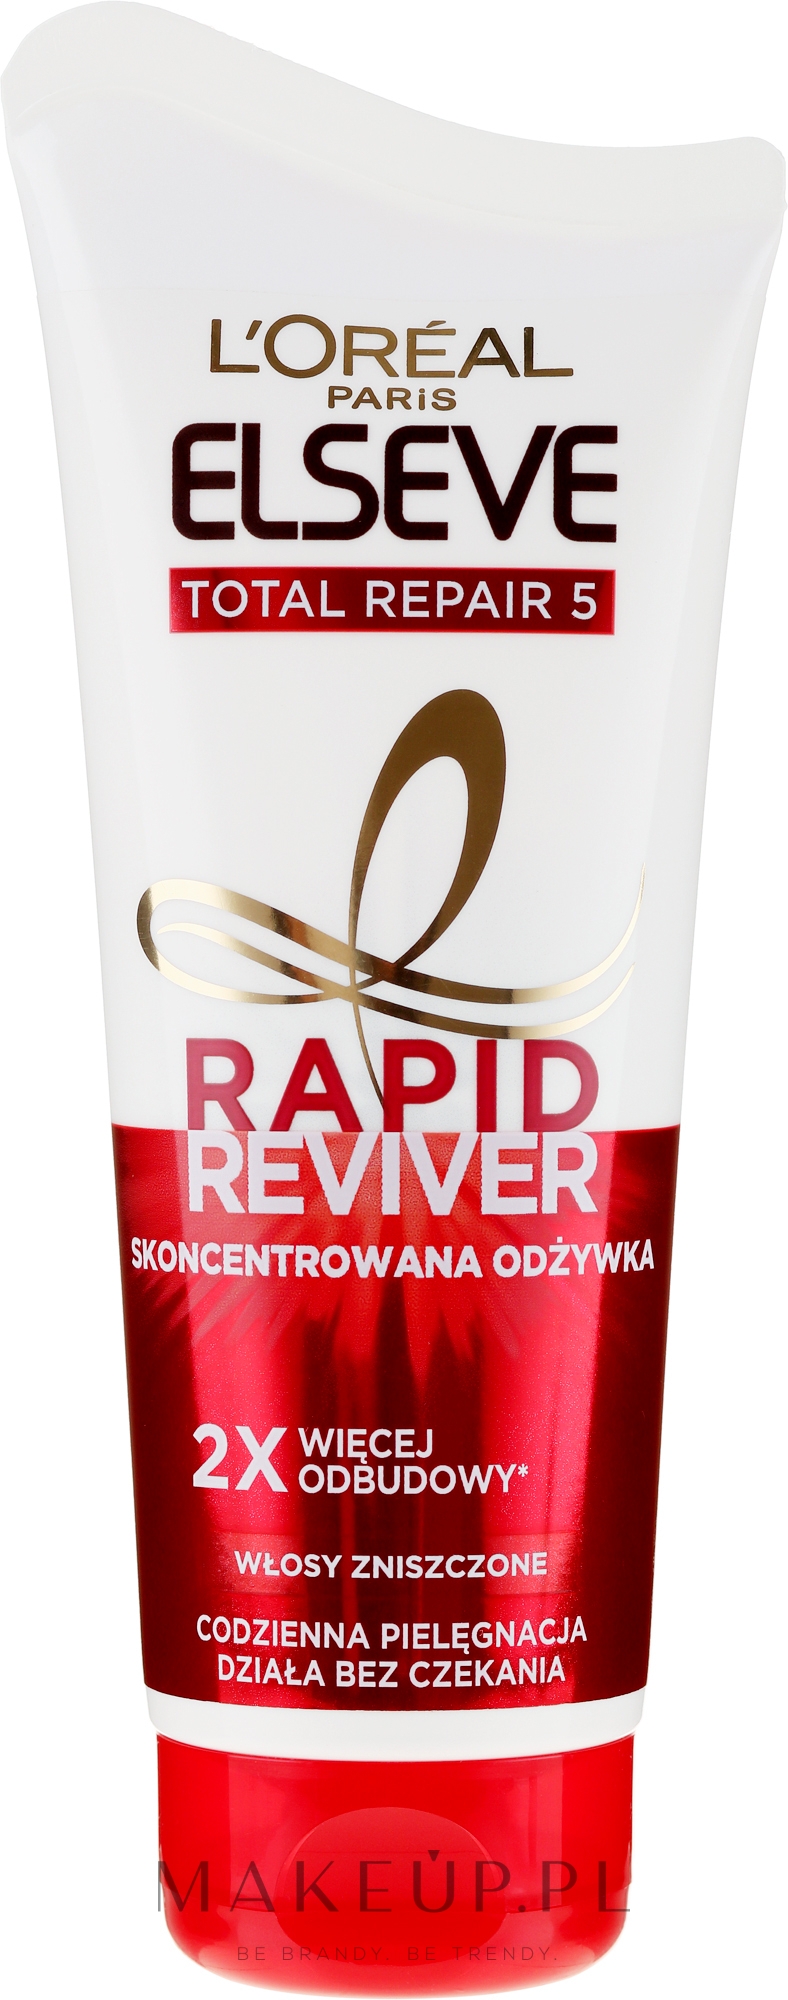 Skoncentrowana odżywka do włosów zniszczonych - L'Oréal Paris Elseve Rapid Reviver Total Repair 5 — Zdjęcie 180 ml